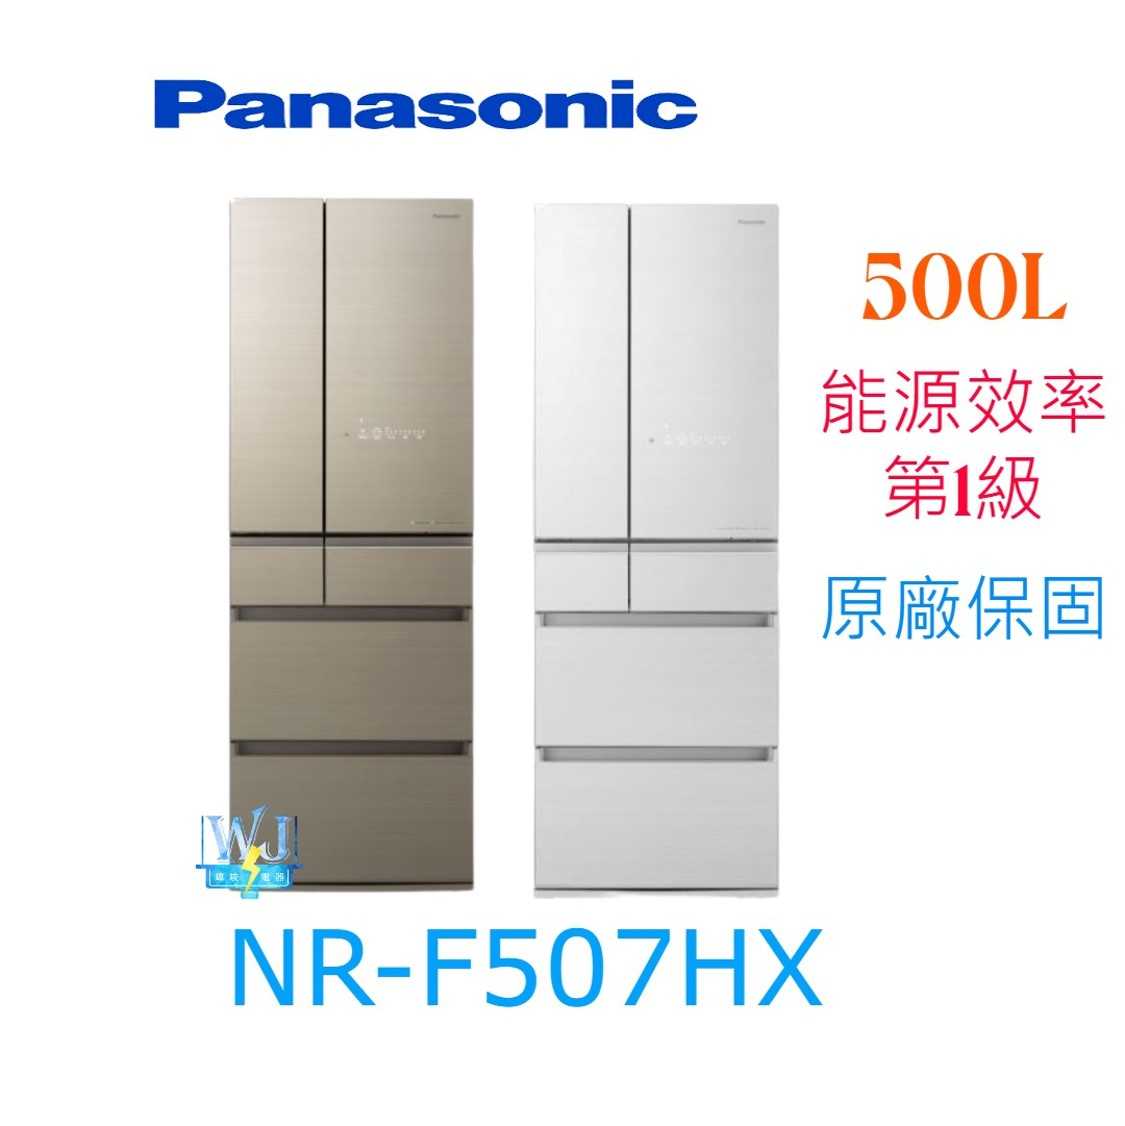 可議價【原廠保固】Panasonic 國際 NR-F507HX 六門變頻冰箱 NRF507HX 日本製 電冰箱 原廠保固